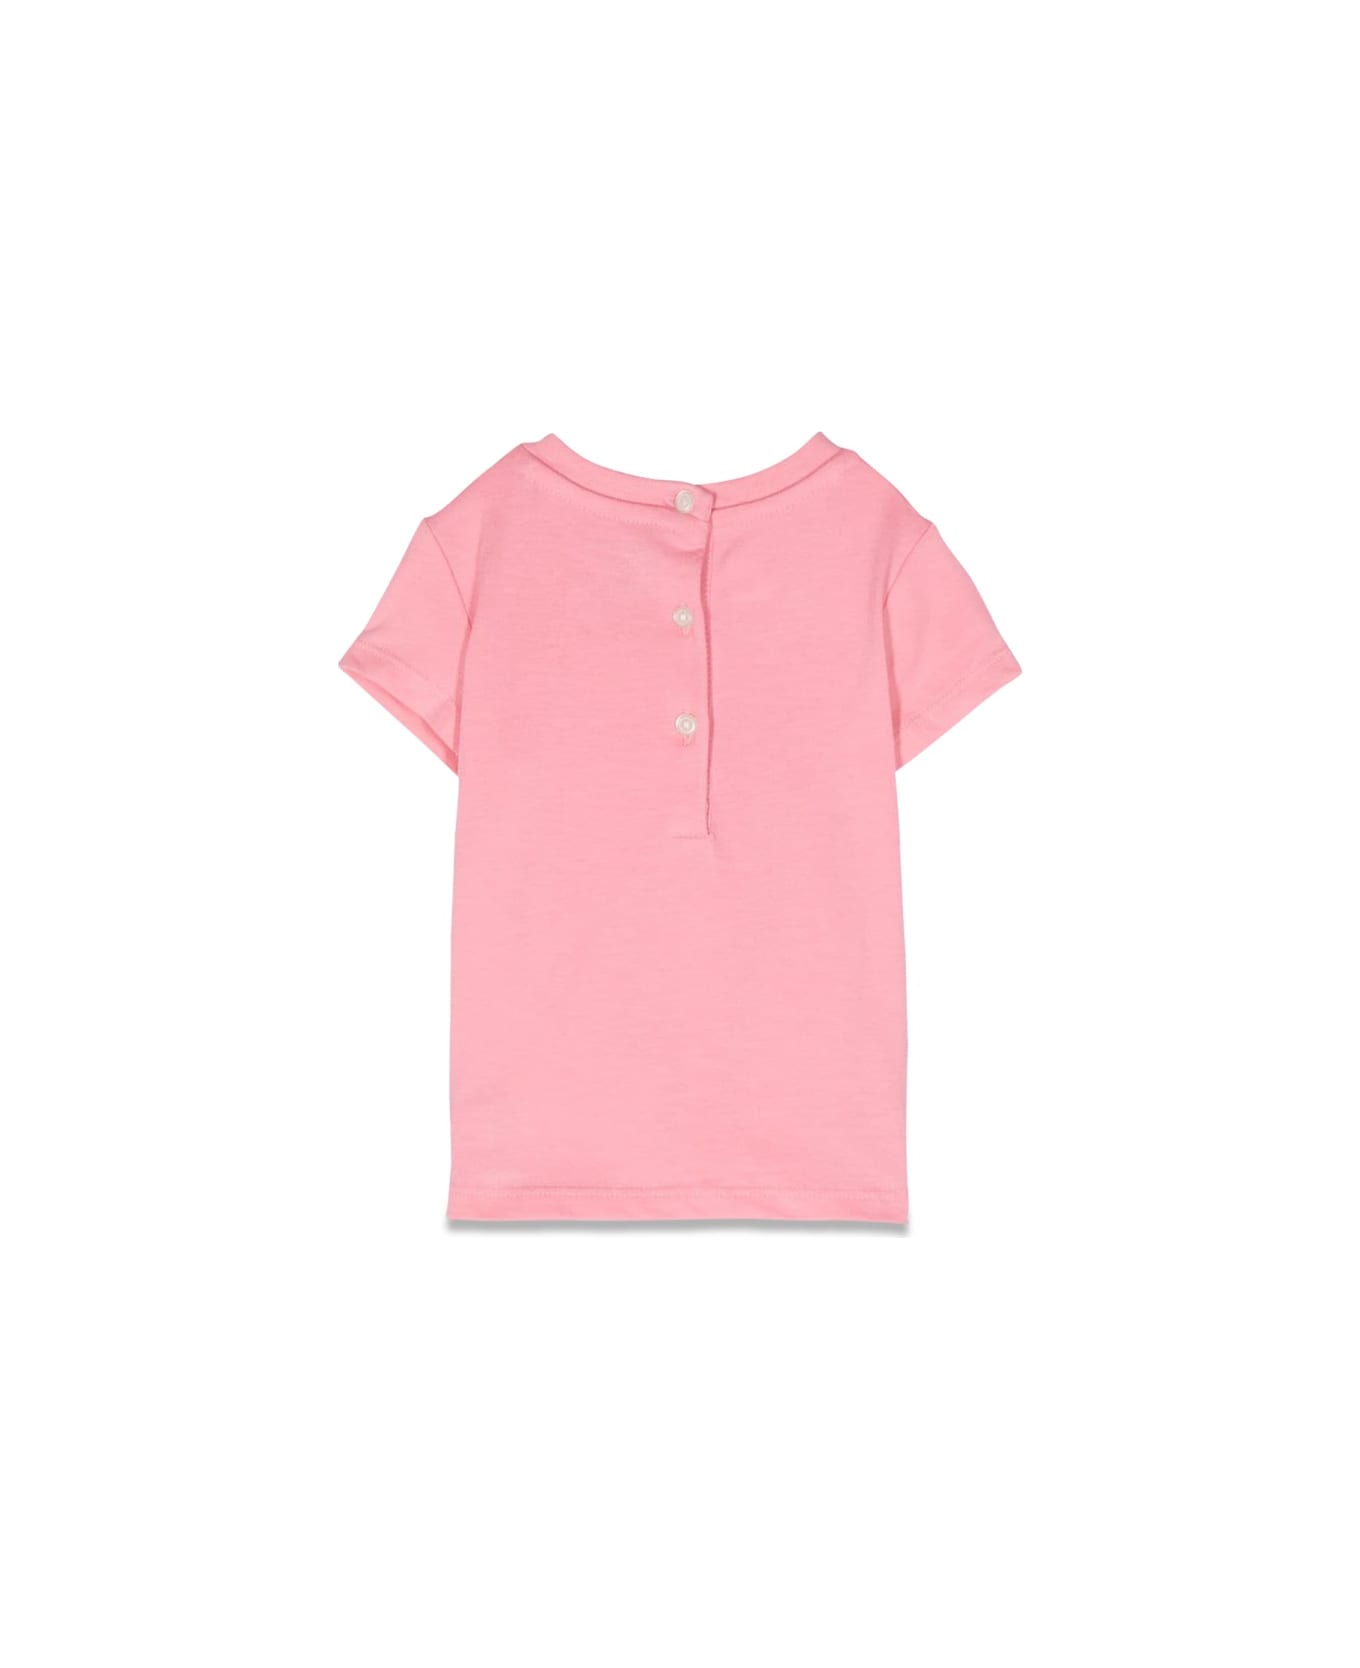 Polo Ralph Lauren Ss Cn Tee-tops-knitk241dc06 - PINK